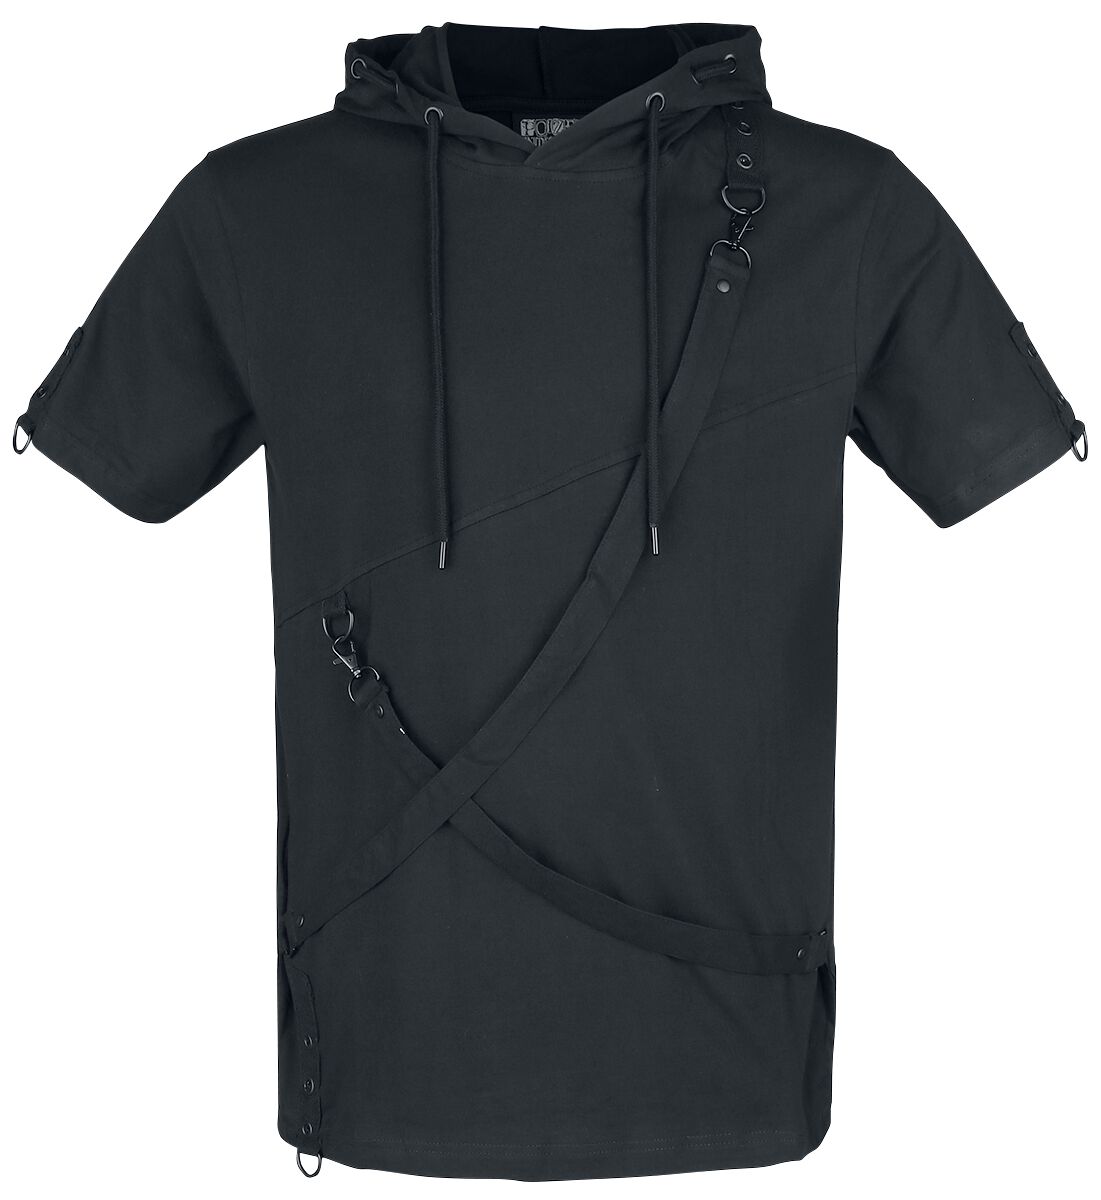 Poizen Industries - Gothic T-Shirt - Lucius Top - S bis XL - für Männer - Größe M - schwarz